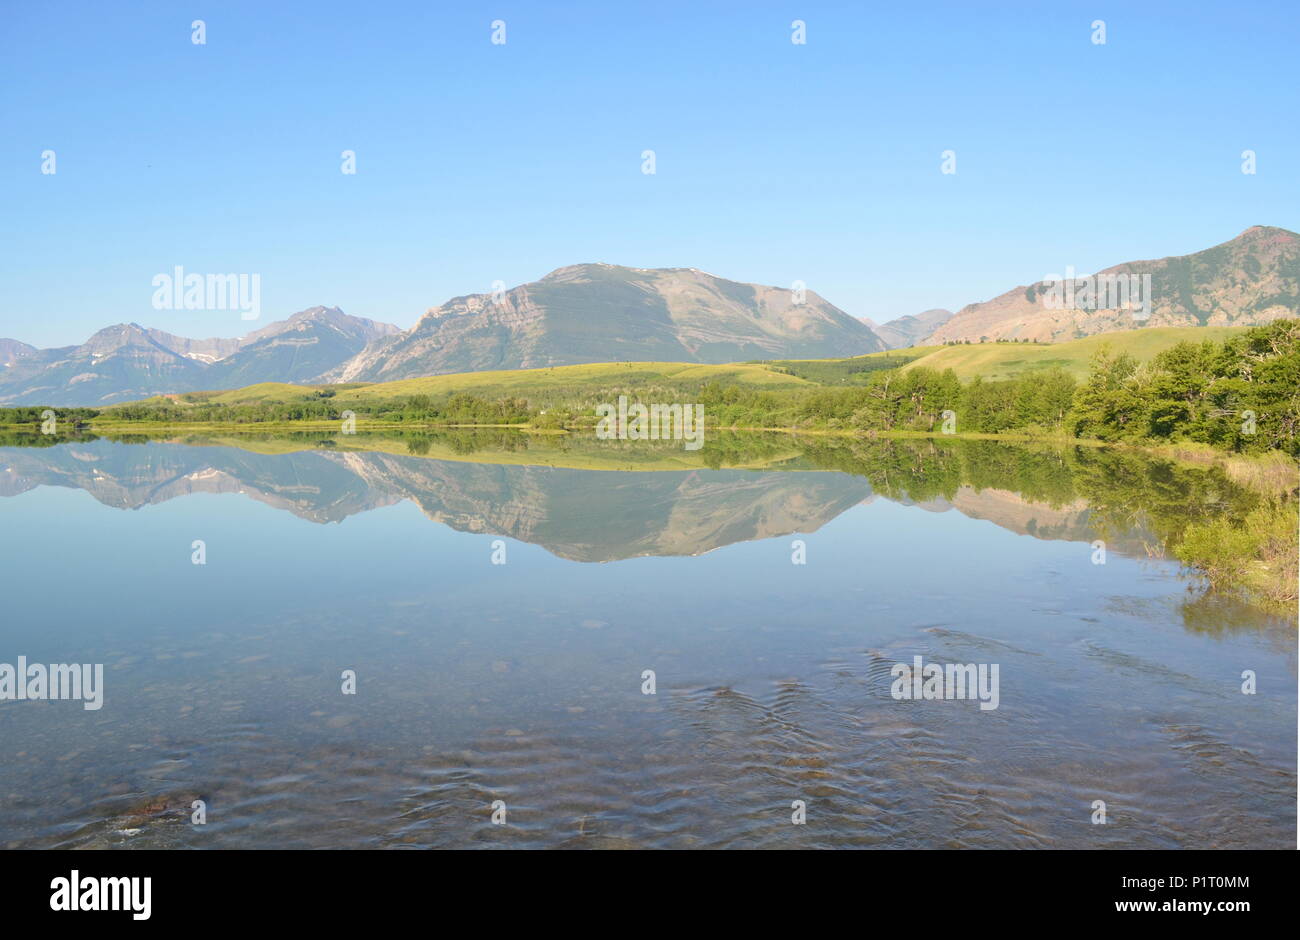 Un lac miroir reflétant les montagnes derrière elle dans le lac Waterton Park, Alberta, Canada. Banque D'Images